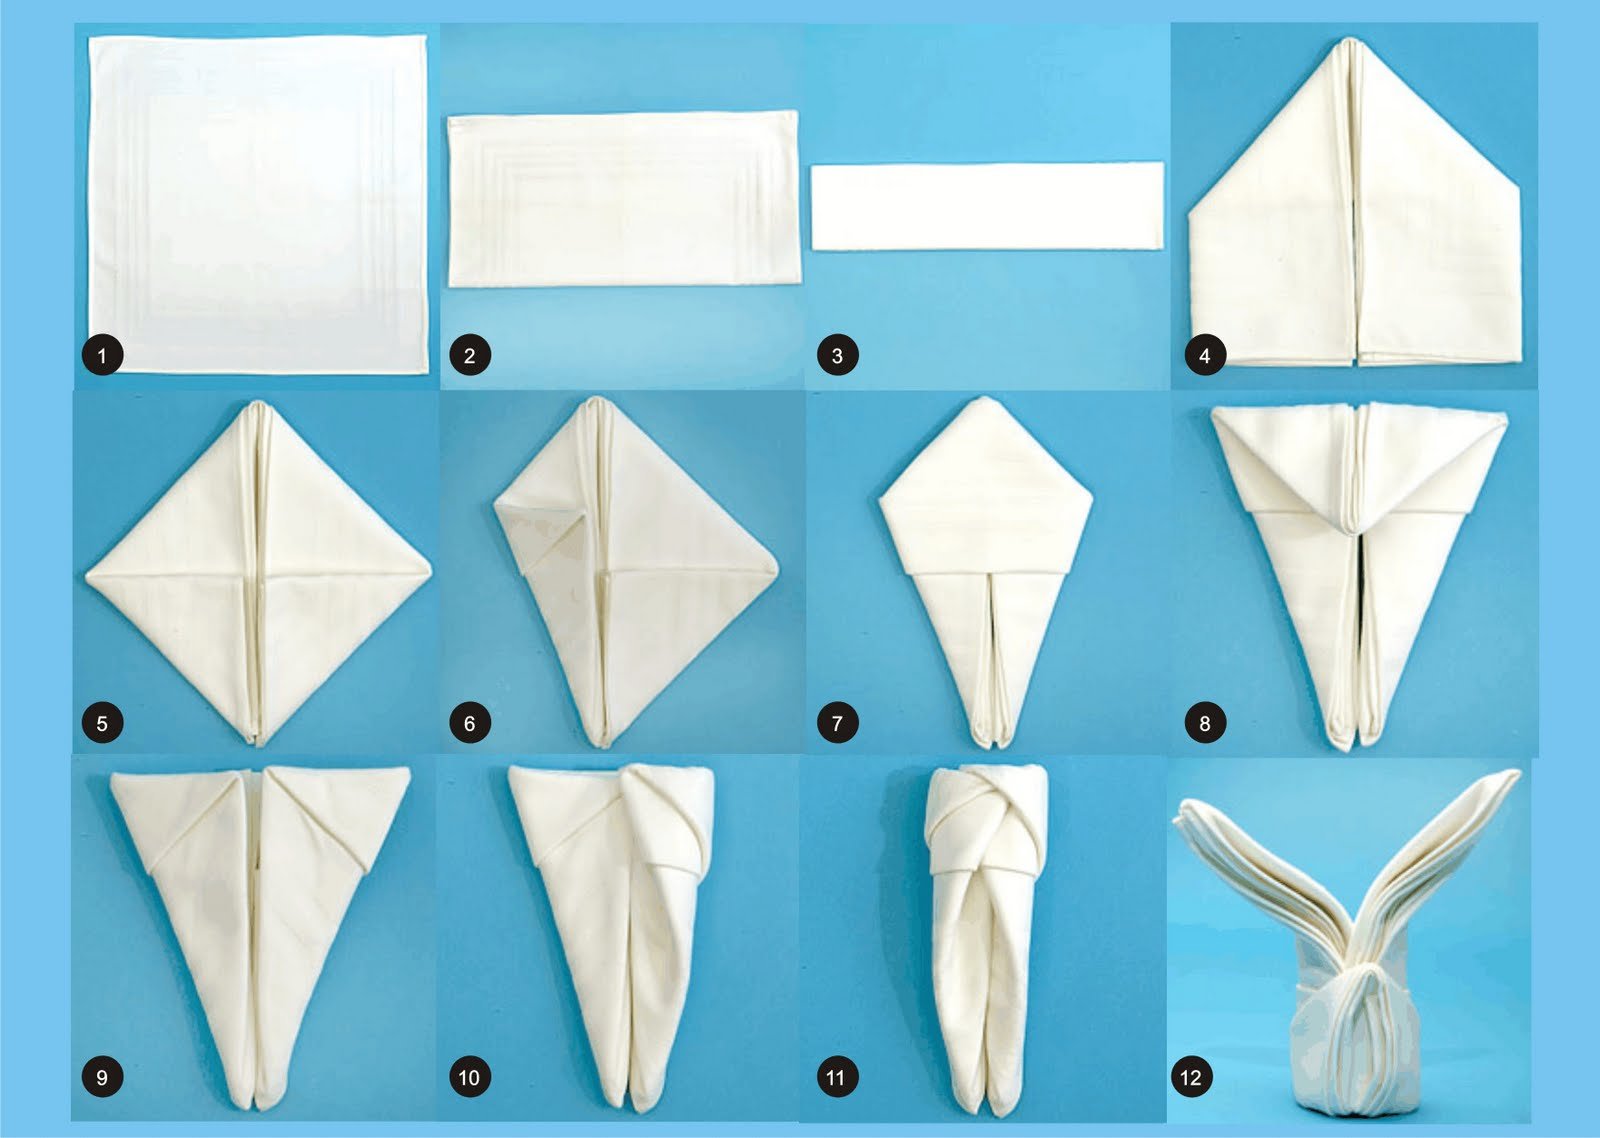 Поделки из бумажных салфеток своими руками - простые и понятные мастер-классы, фото идеи, примеры